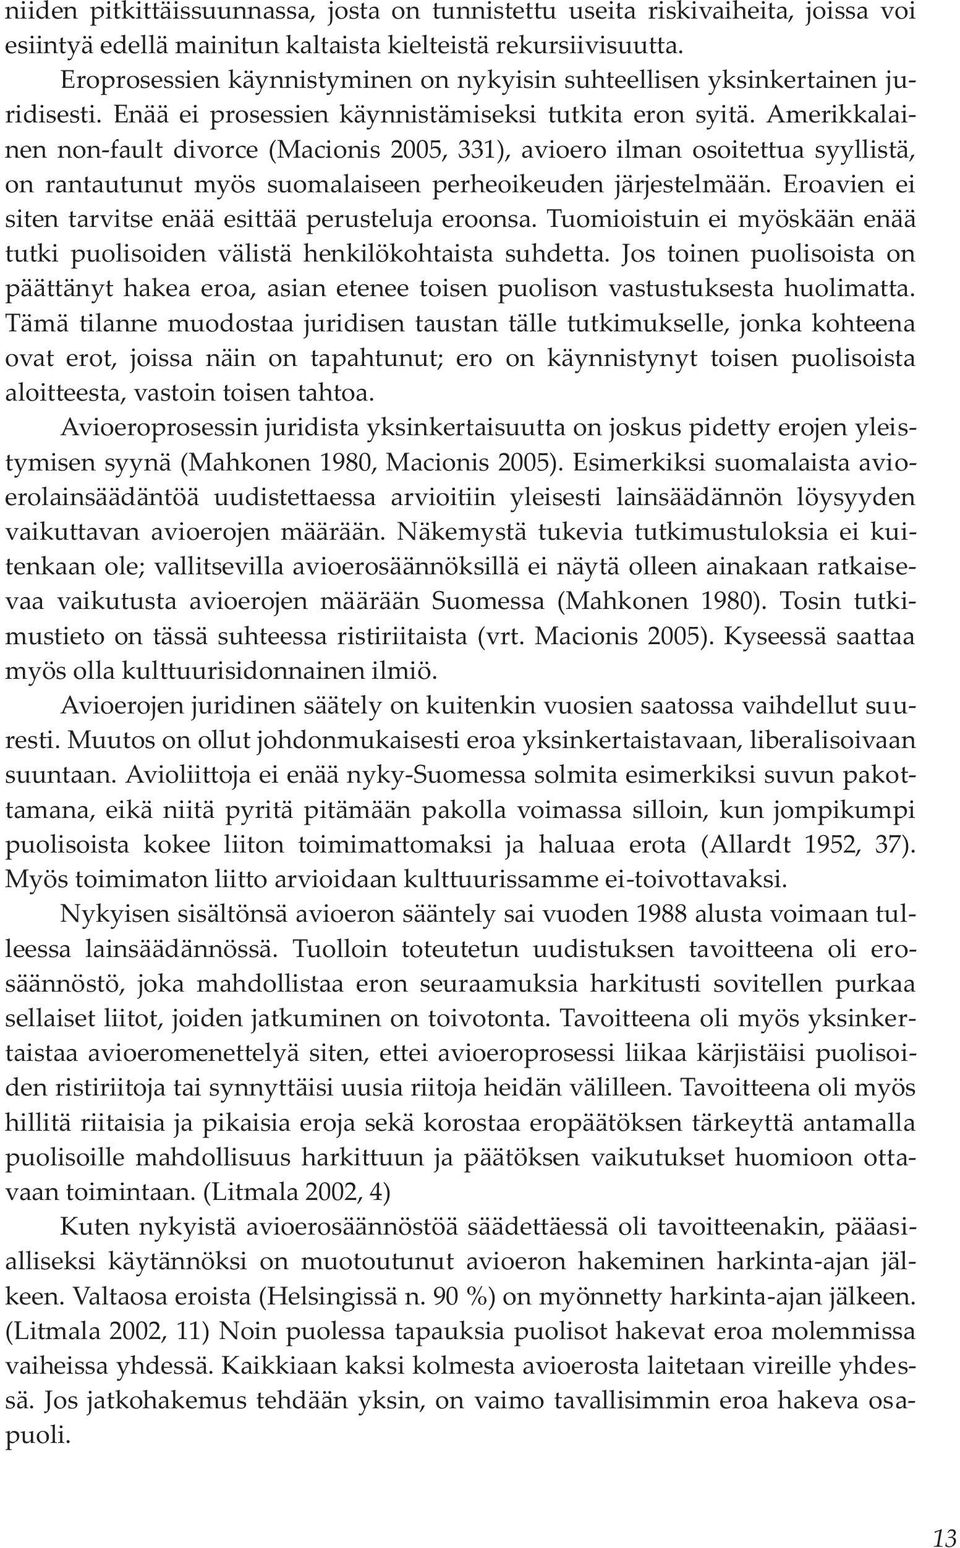 Amerikkalainen non-fault divorce (Macionis 2005, 331), avioero ilman osoitettua syyllistä, on rantautunut myös suomalaiseen perheoikeuden järjestelmään.